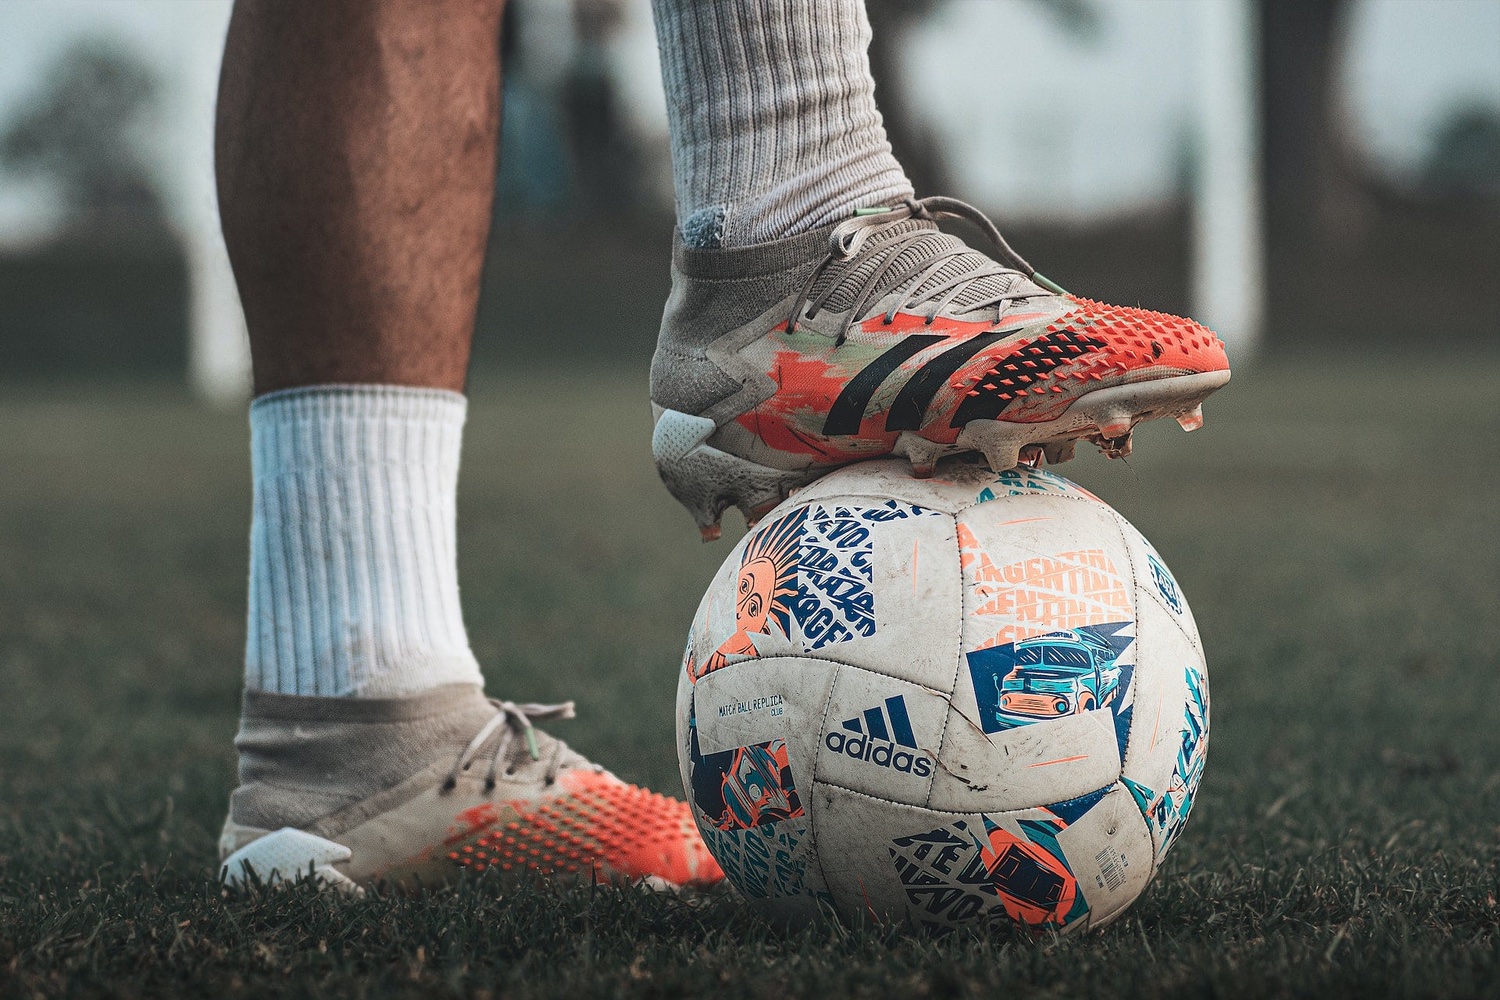 Fútbol con diabetes: Descubre cómo practicarlo de manera segura